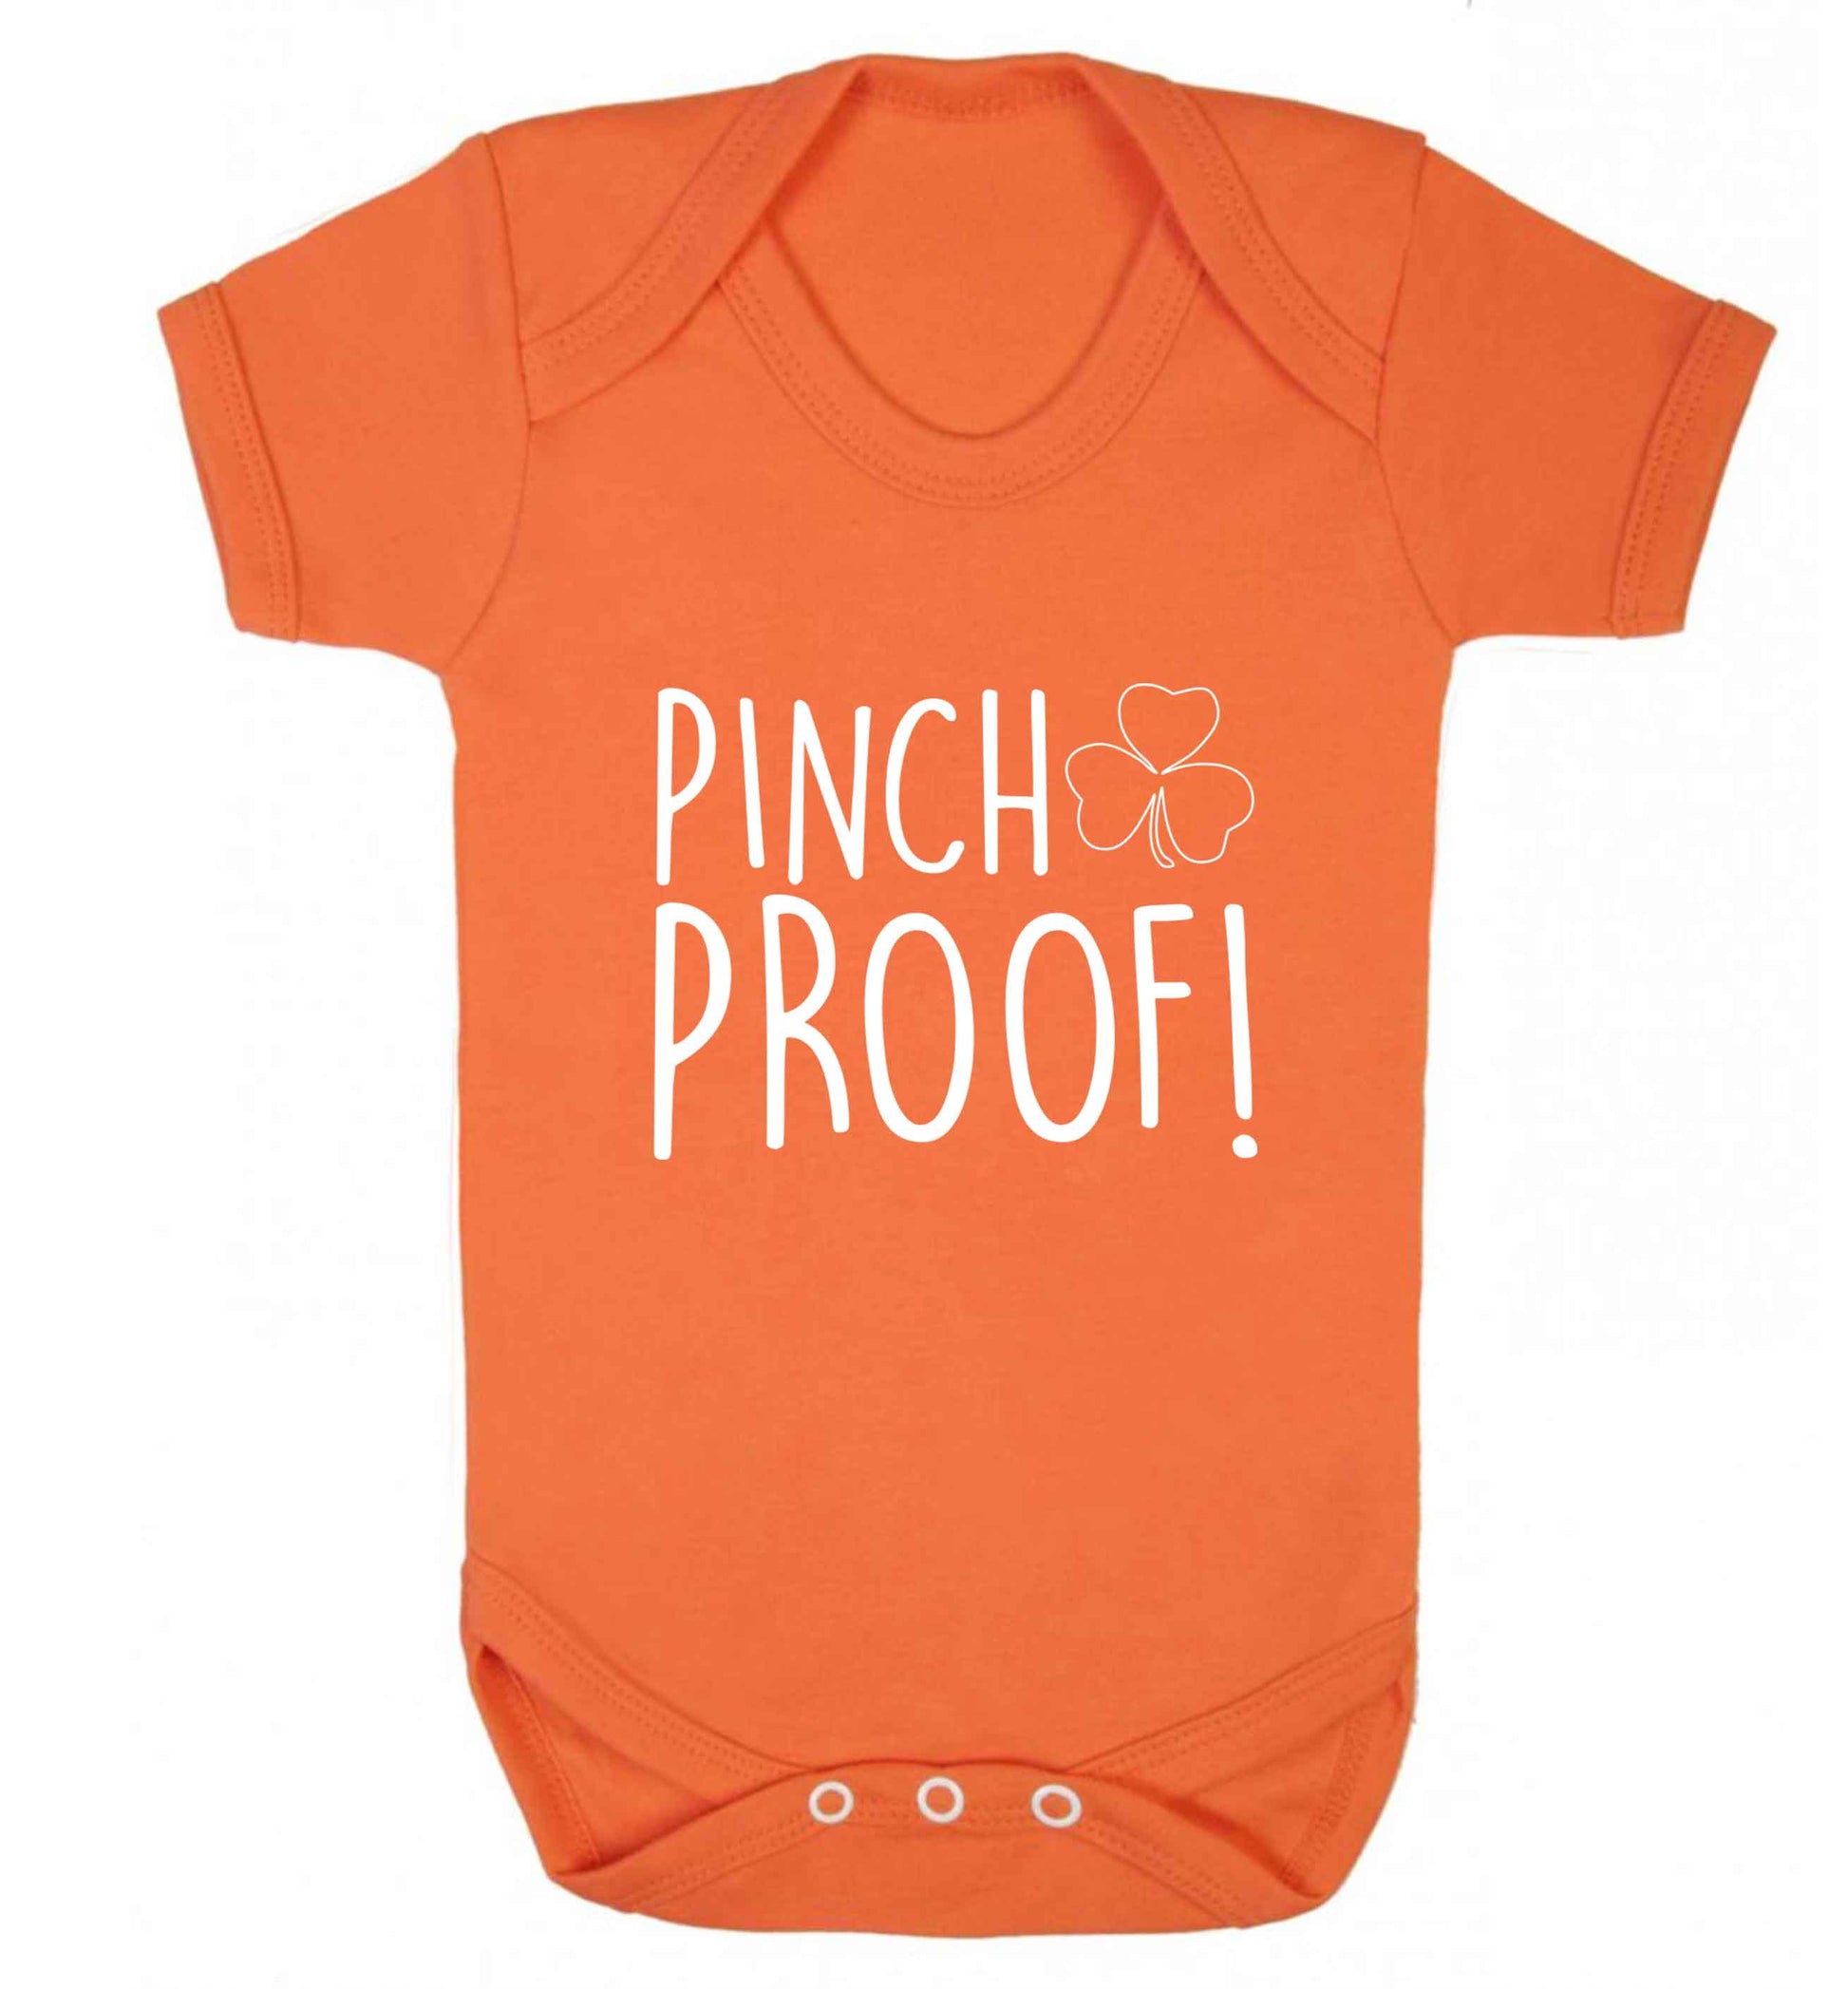 Pinch Proof baby vest orange 18-24 months